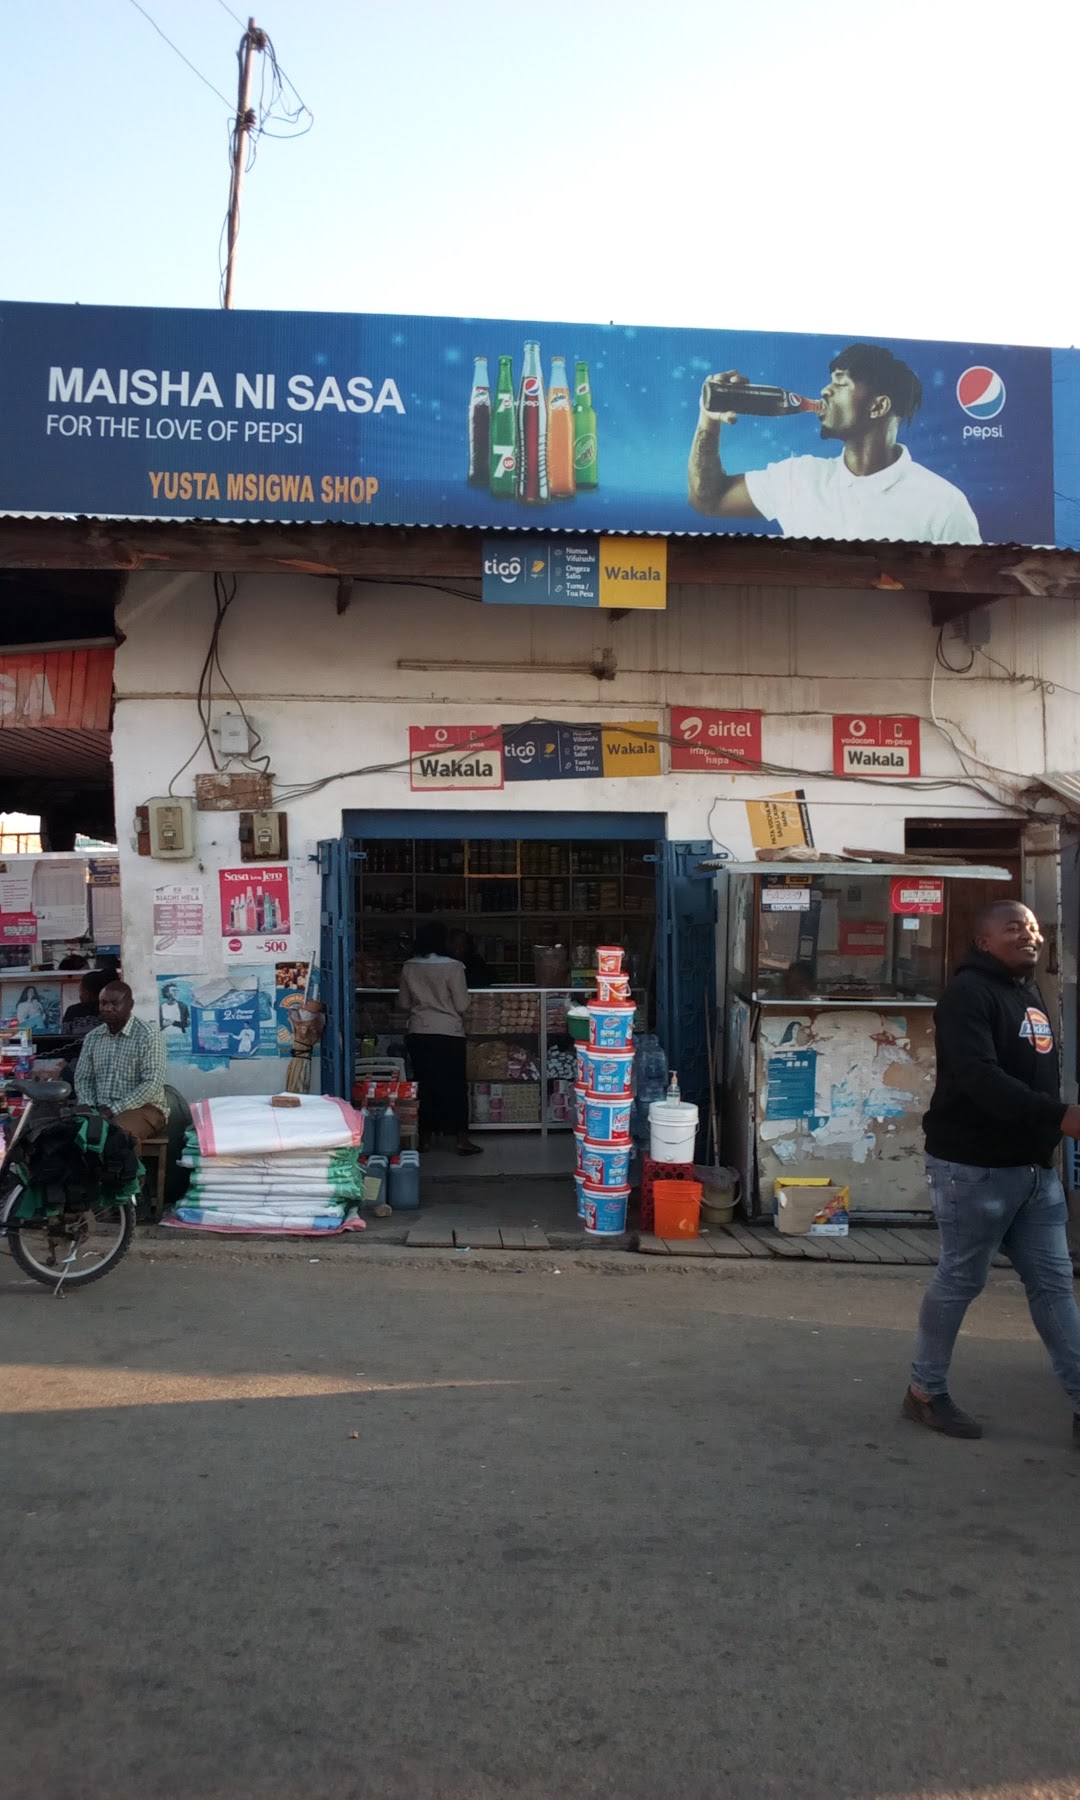 Yusta Msigwa Shop